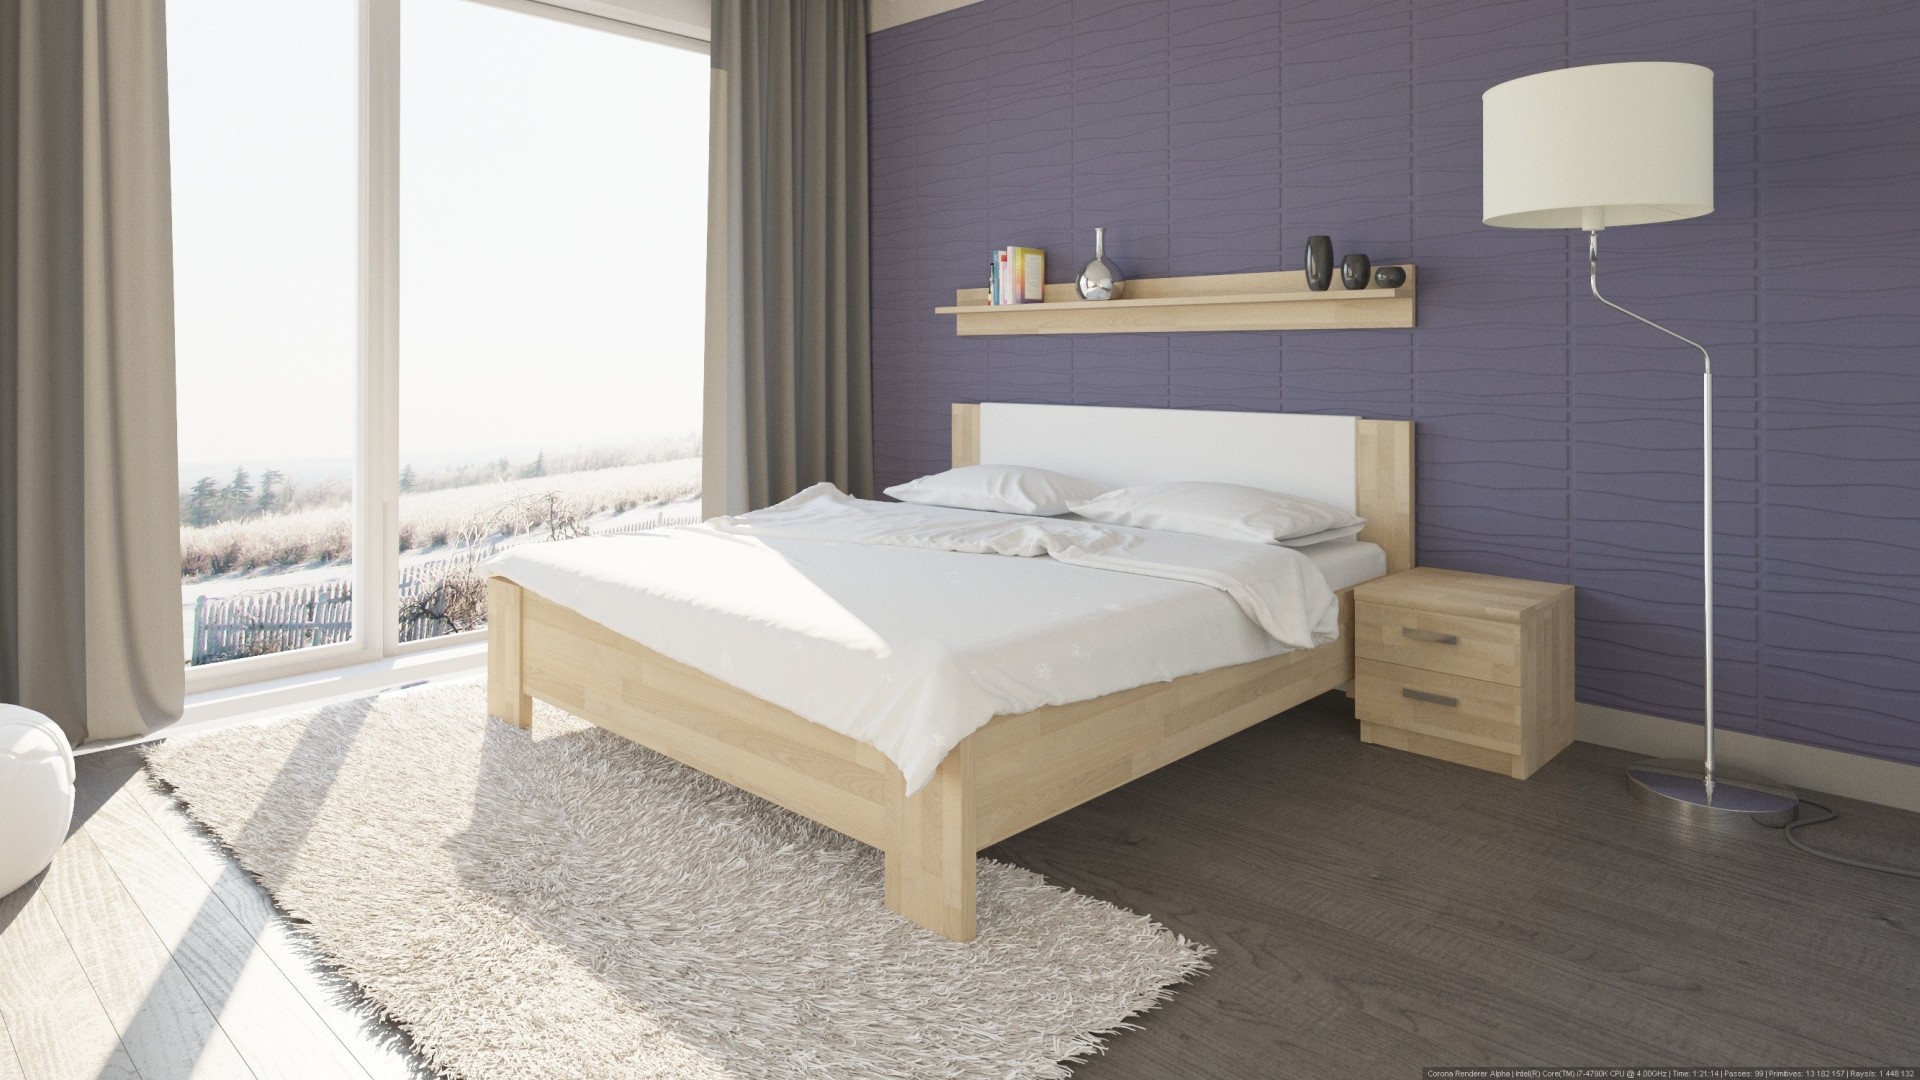 TEXPOL NIKOLETA - masivní dubová postel s čalouněným čelem 160 x 200 cm, dub masiv + čalouněné čelo